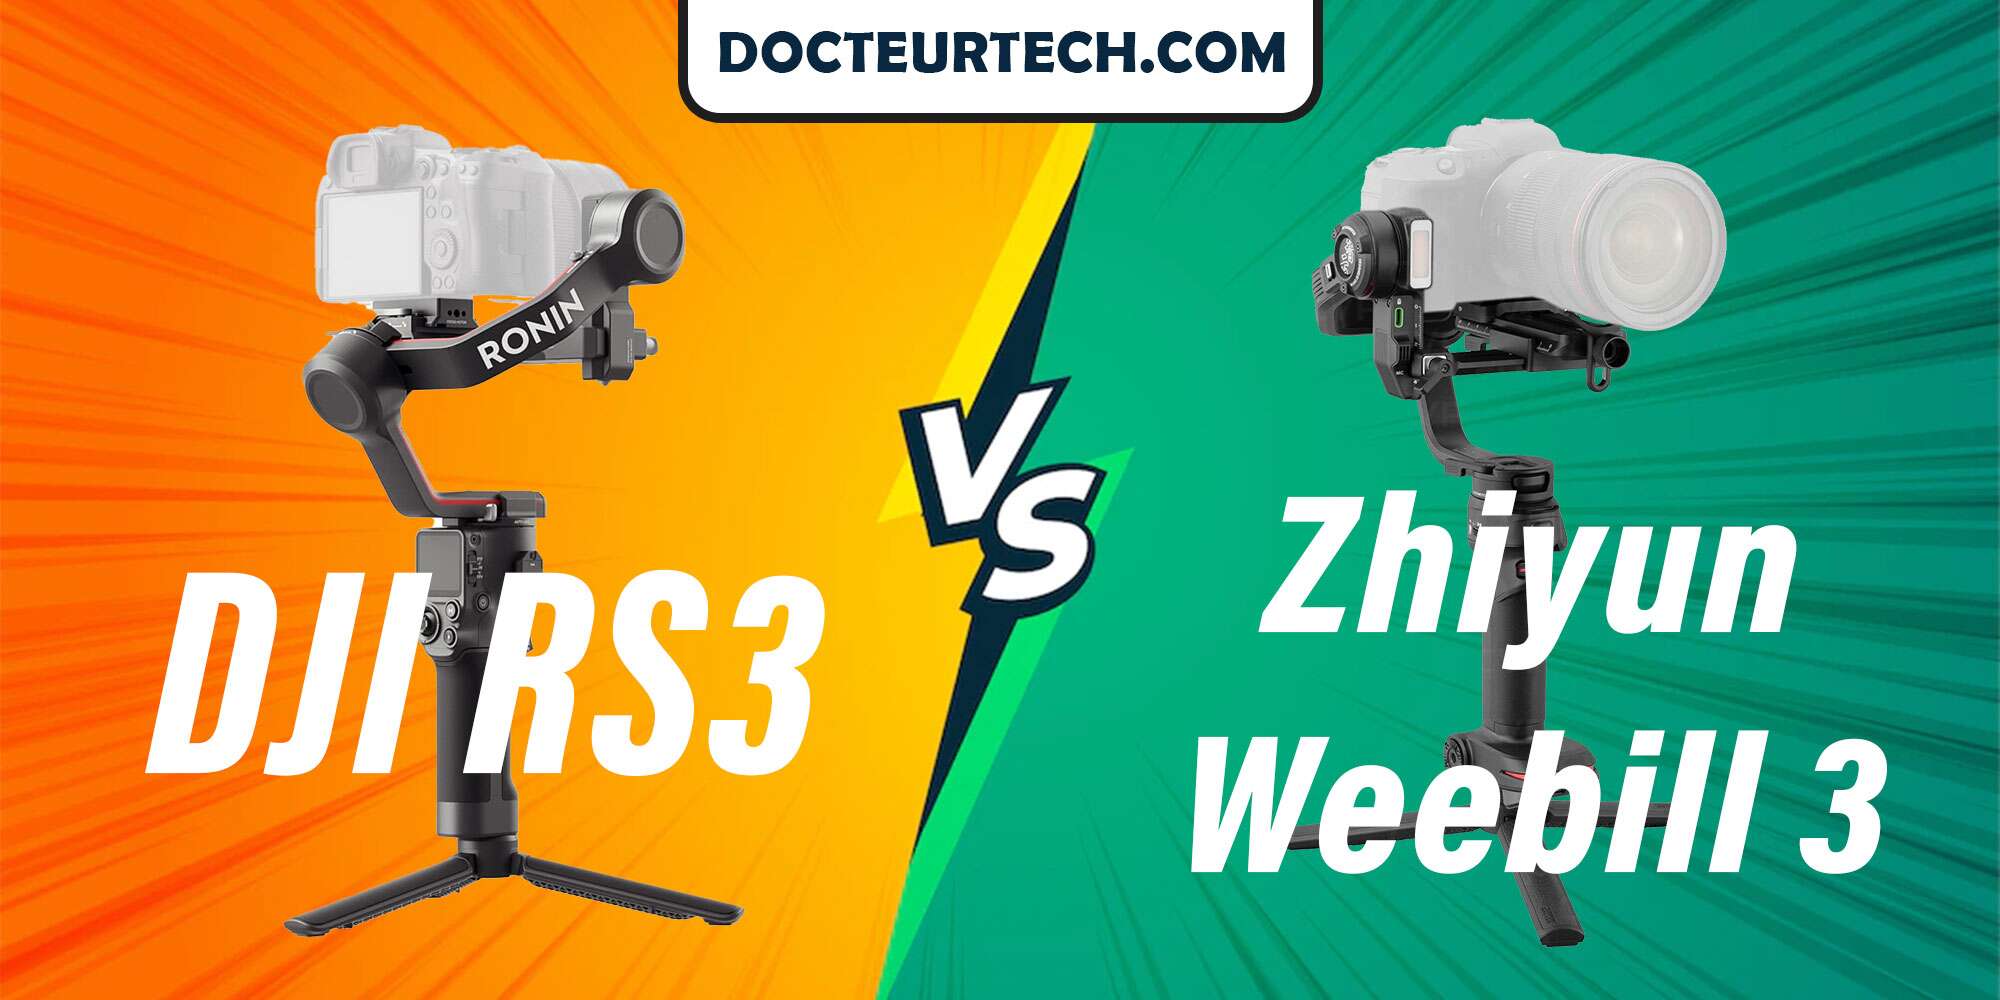 DJI RS3 vs Zhiyun Weebill 3